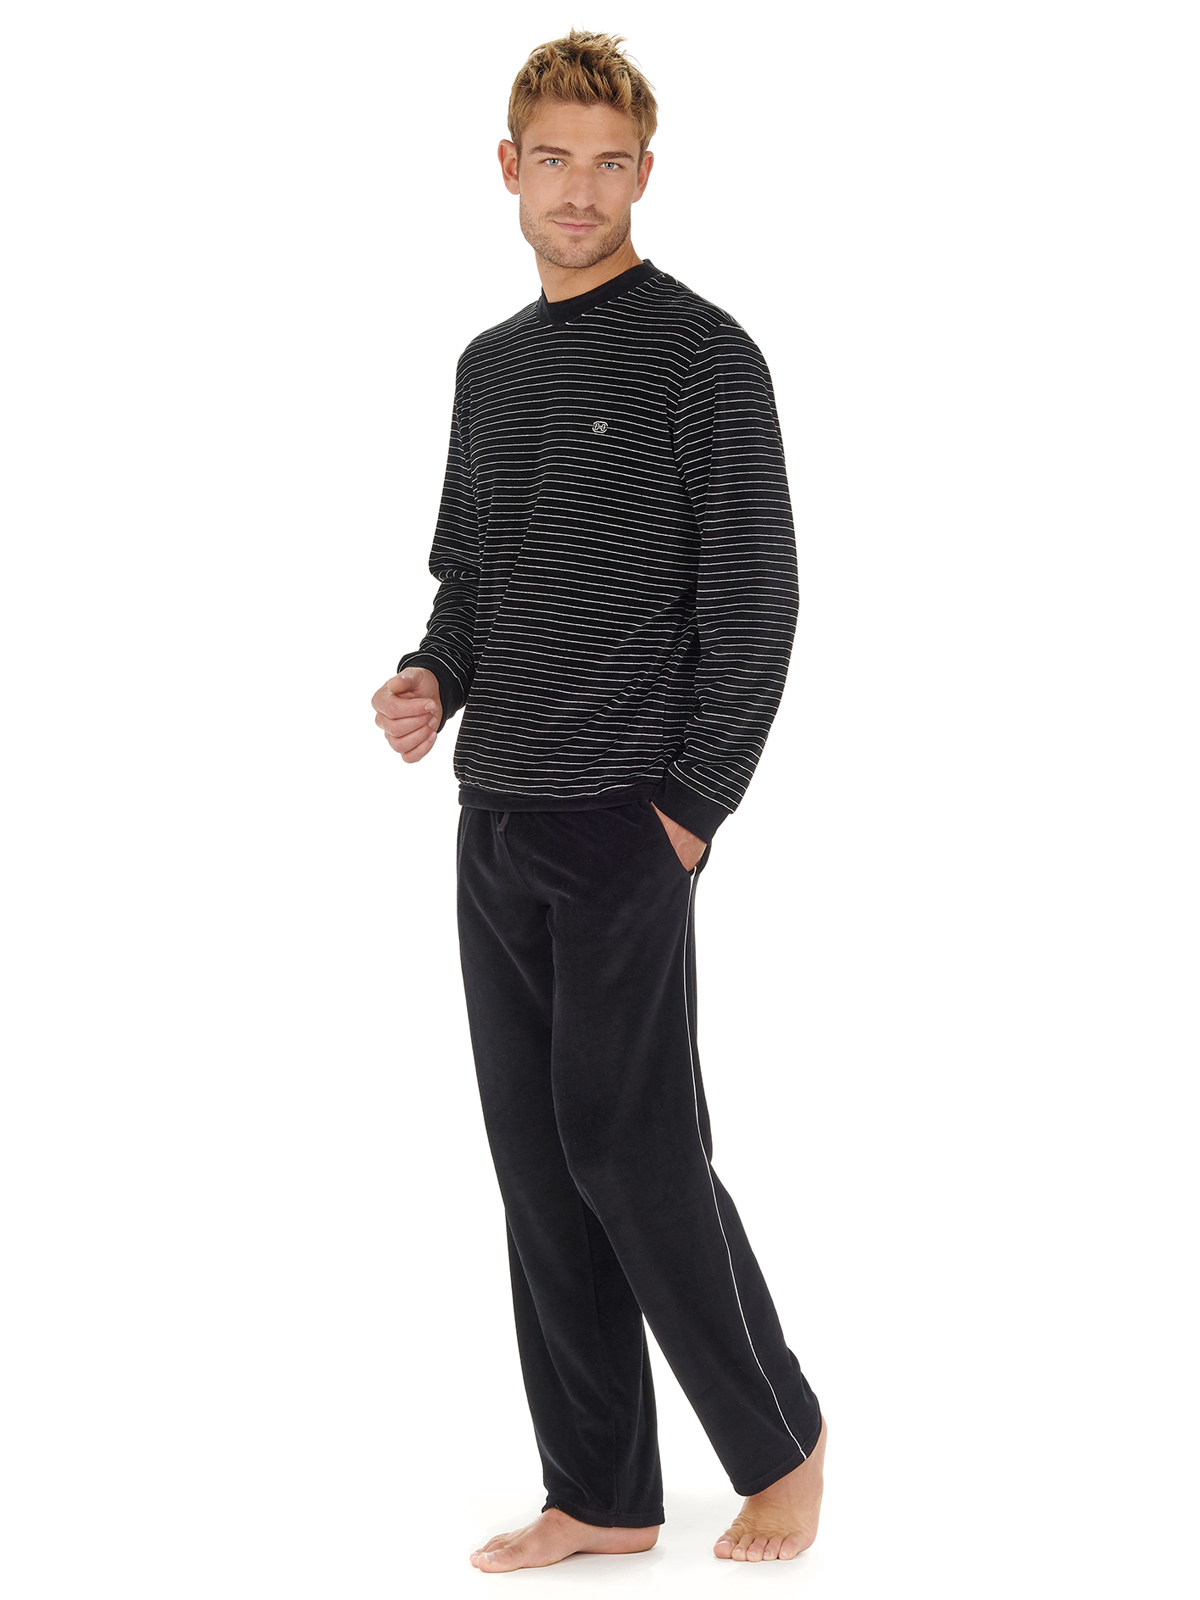 пижама мужская велюровая HOM 40-2619 чёрная в тонкую белую полоску